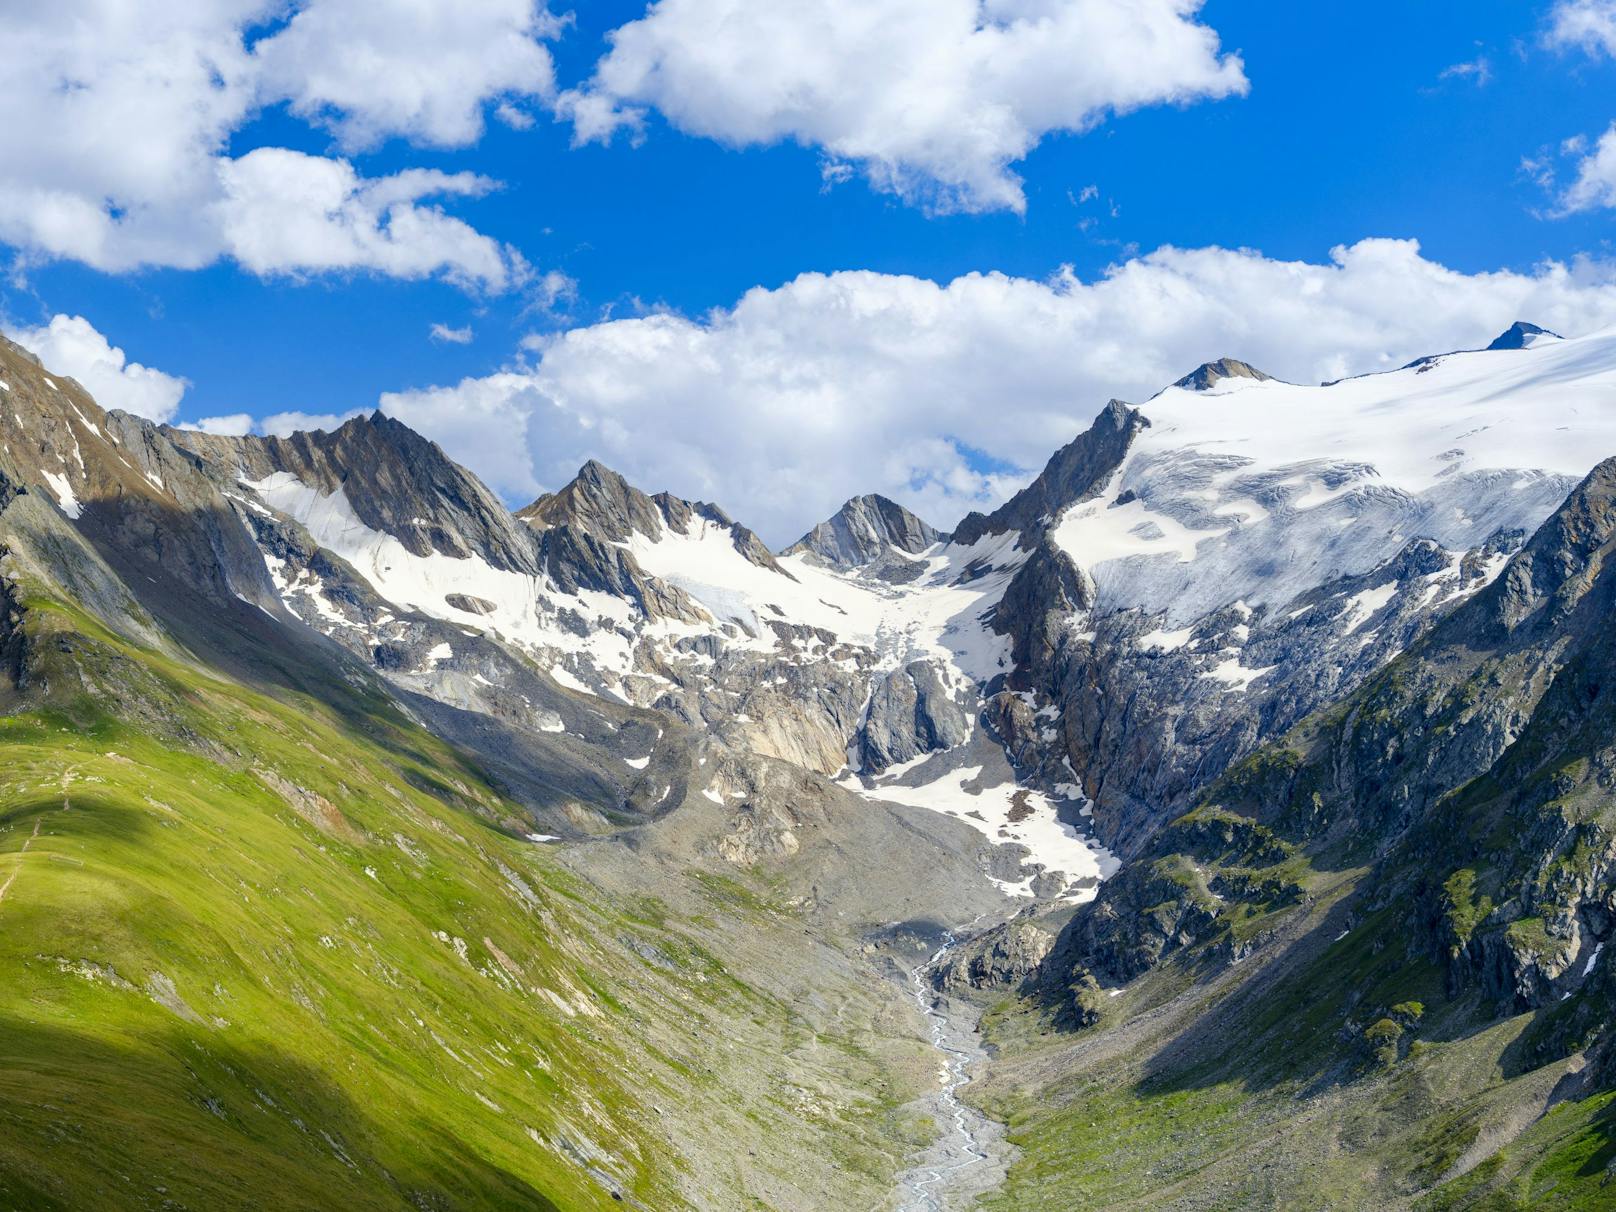 Unberührte Natur? Selbst auf Tiroler Gletschern werden Tschick-Stummel gefunden.